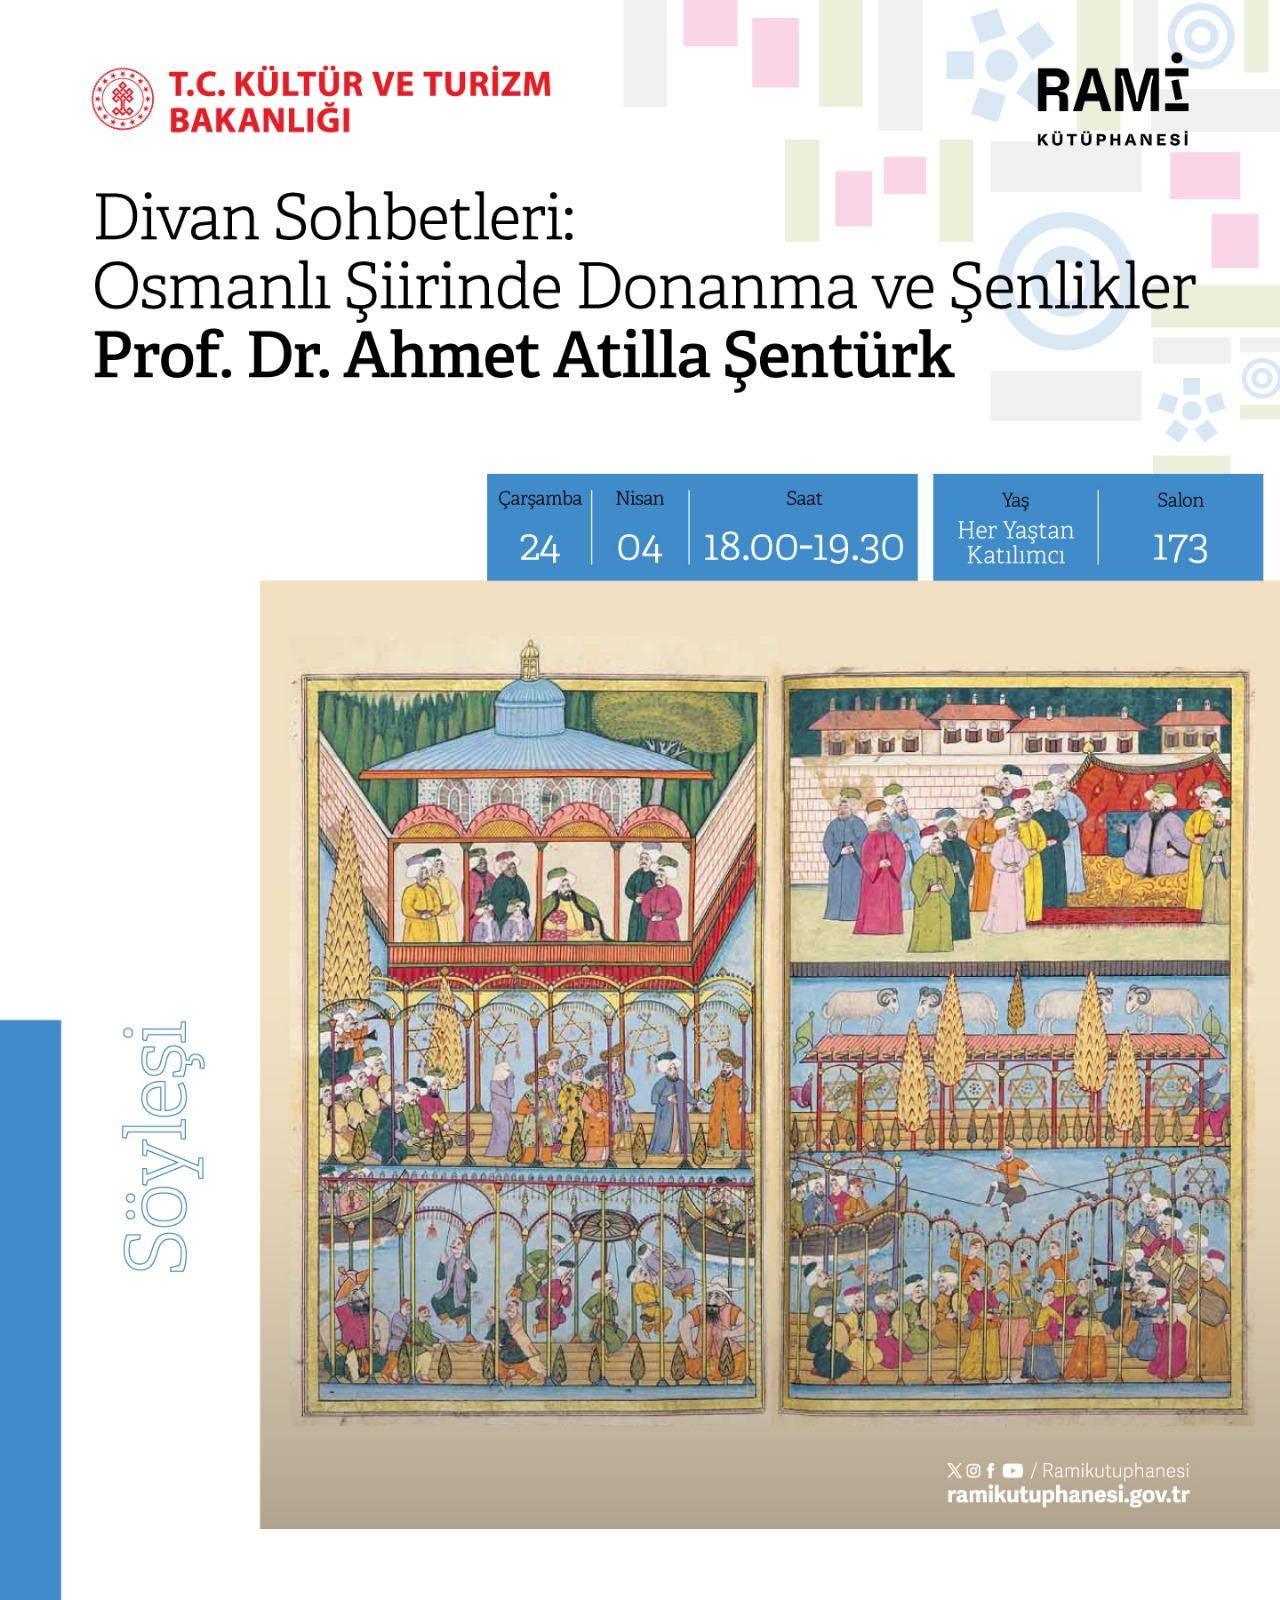 Divan Sohbetleri: Osmanlı Şiirinde Donanma ve Şenlikler (Prof. Dr. Ahmet Atilla Şentürk)